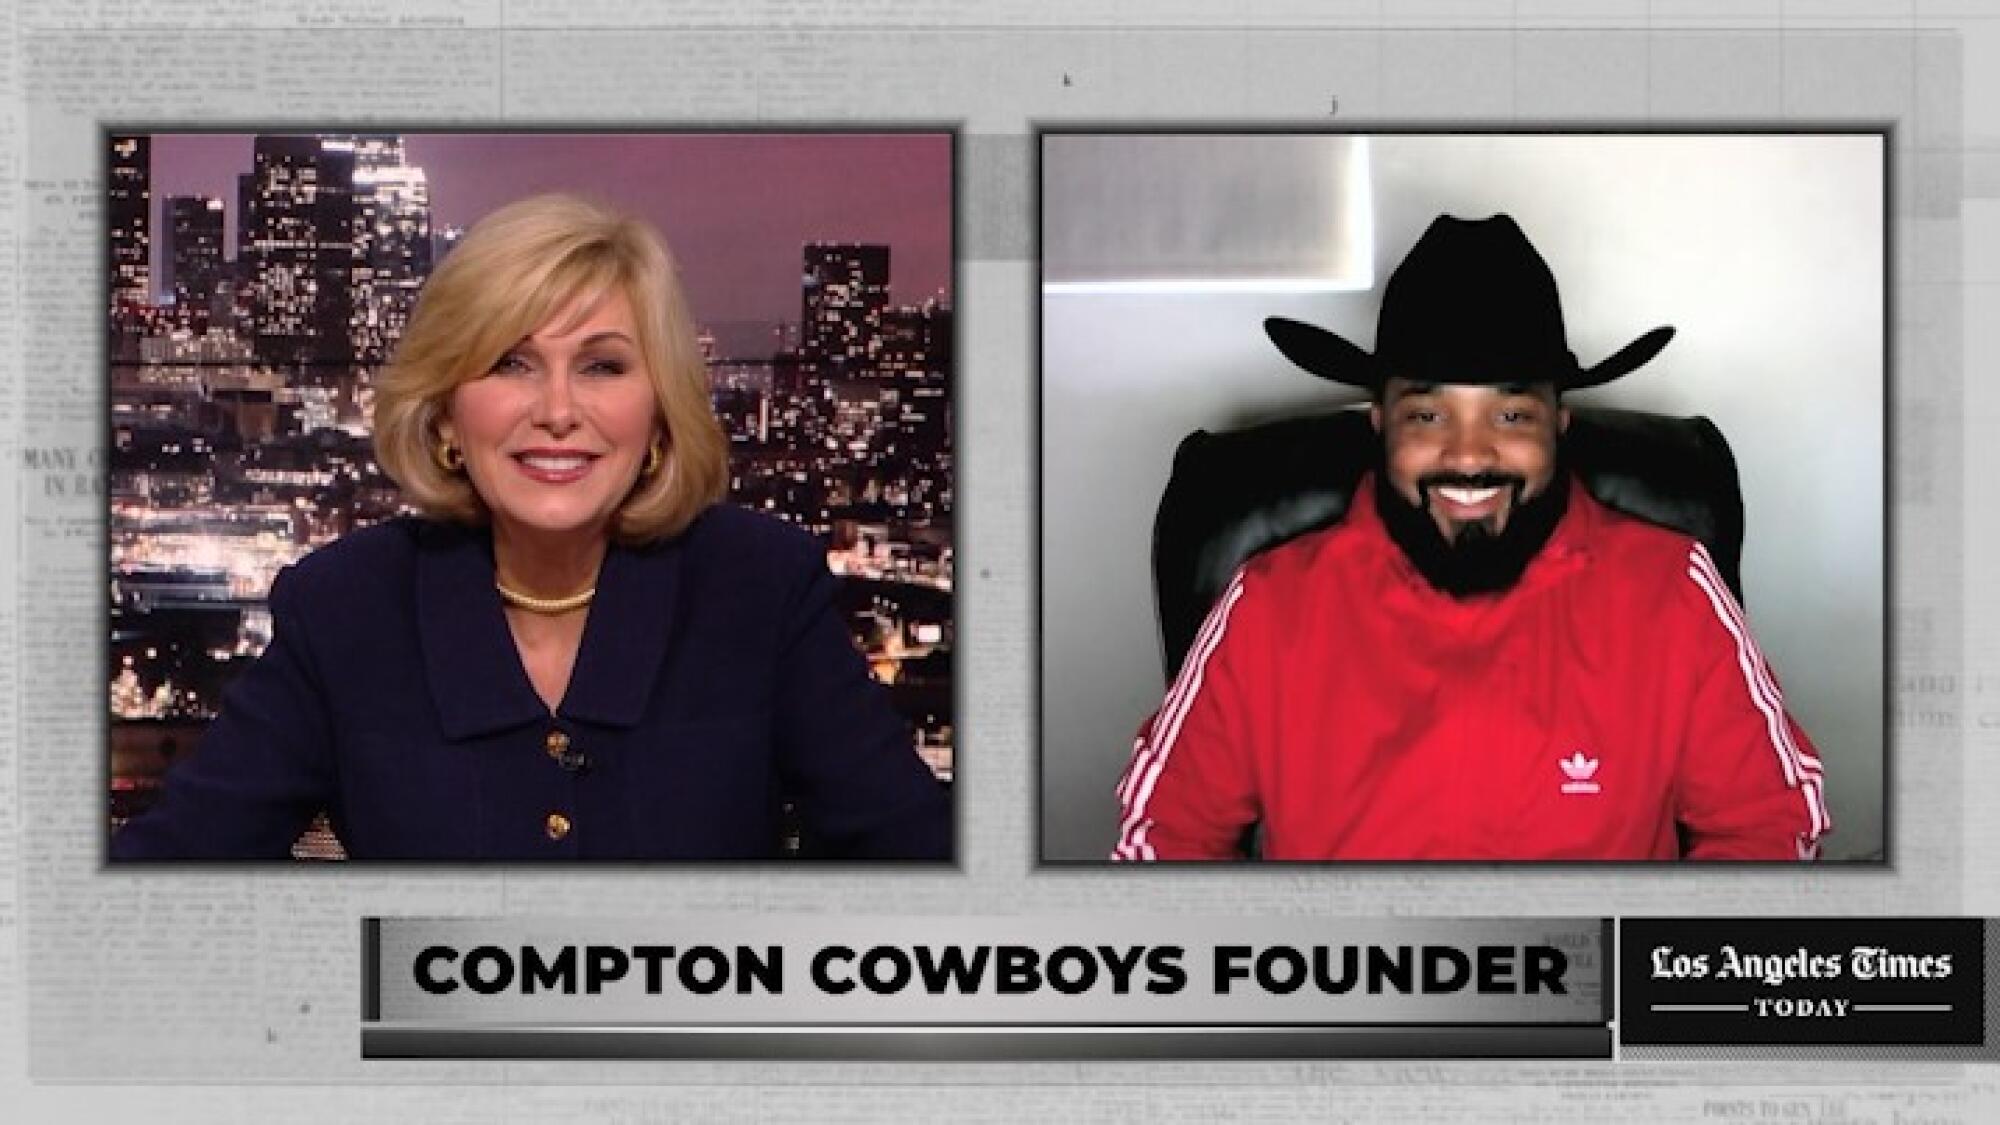 LA Times Today: Compton Cowboys founder Randy Savvy - Los Angeles